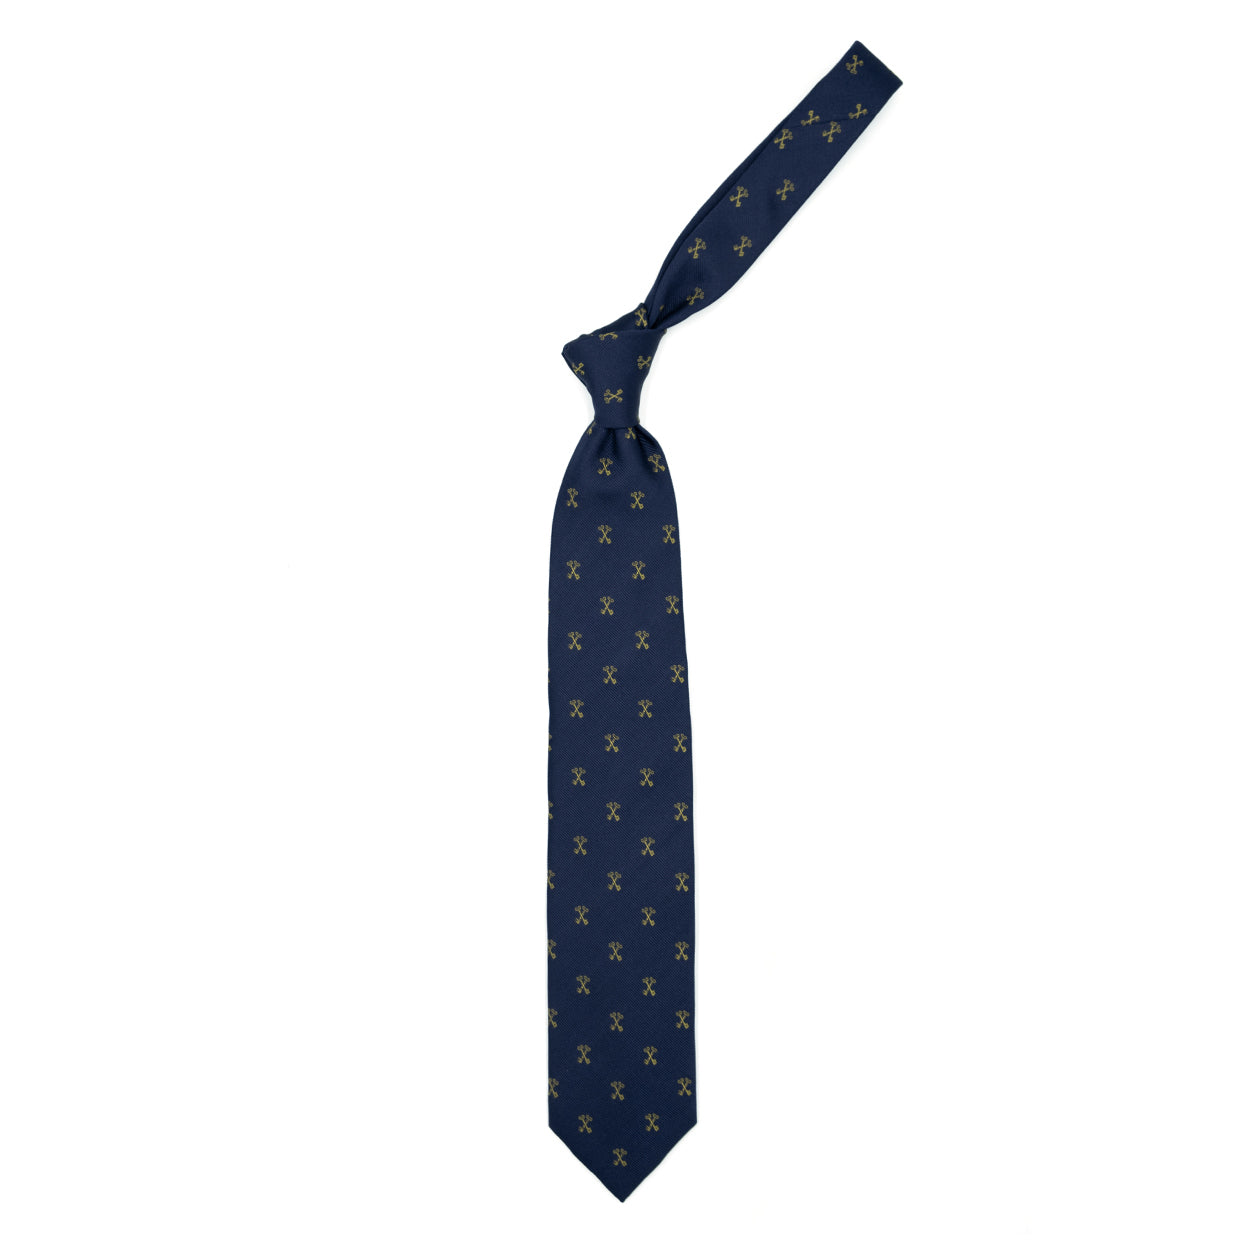 Cravatta blu con chiavi dorate